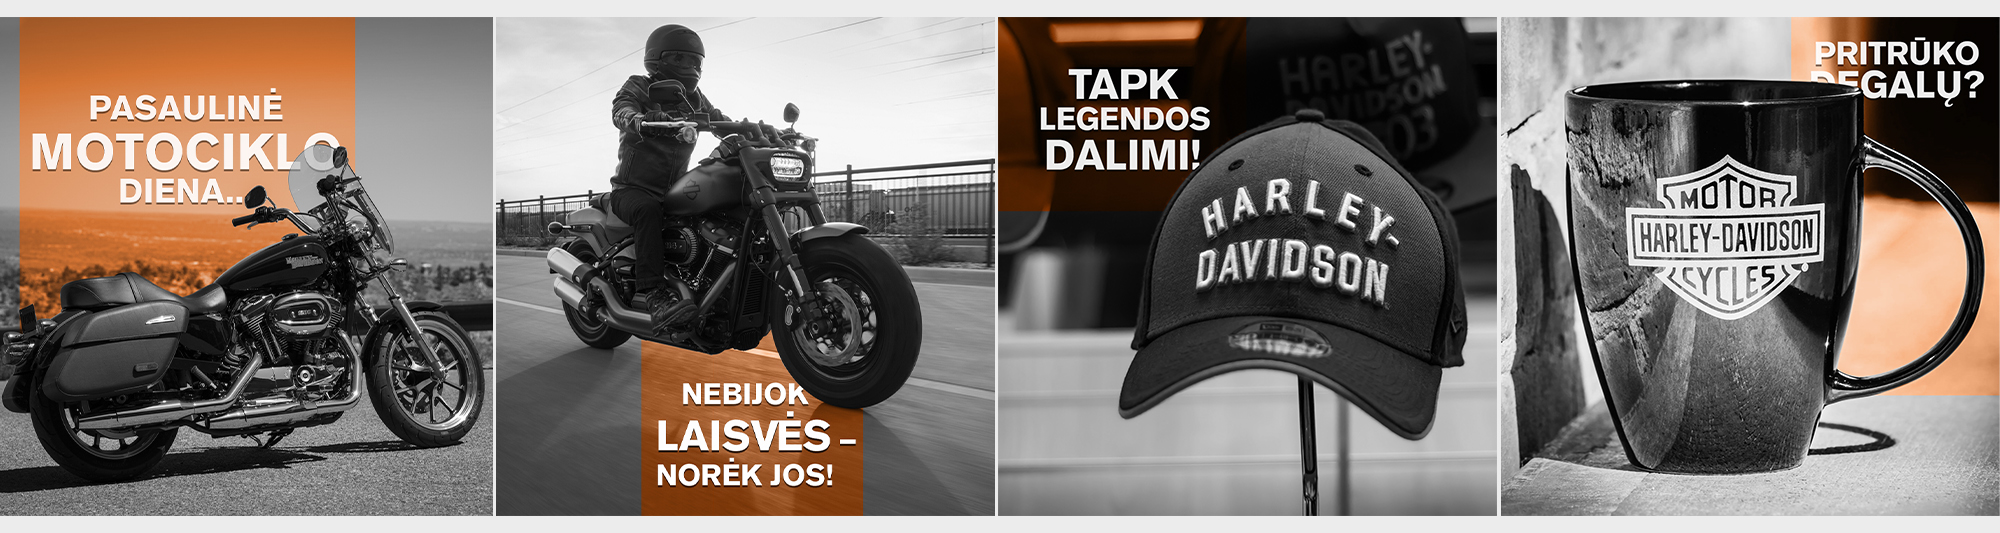 Harley Davidson portfolio